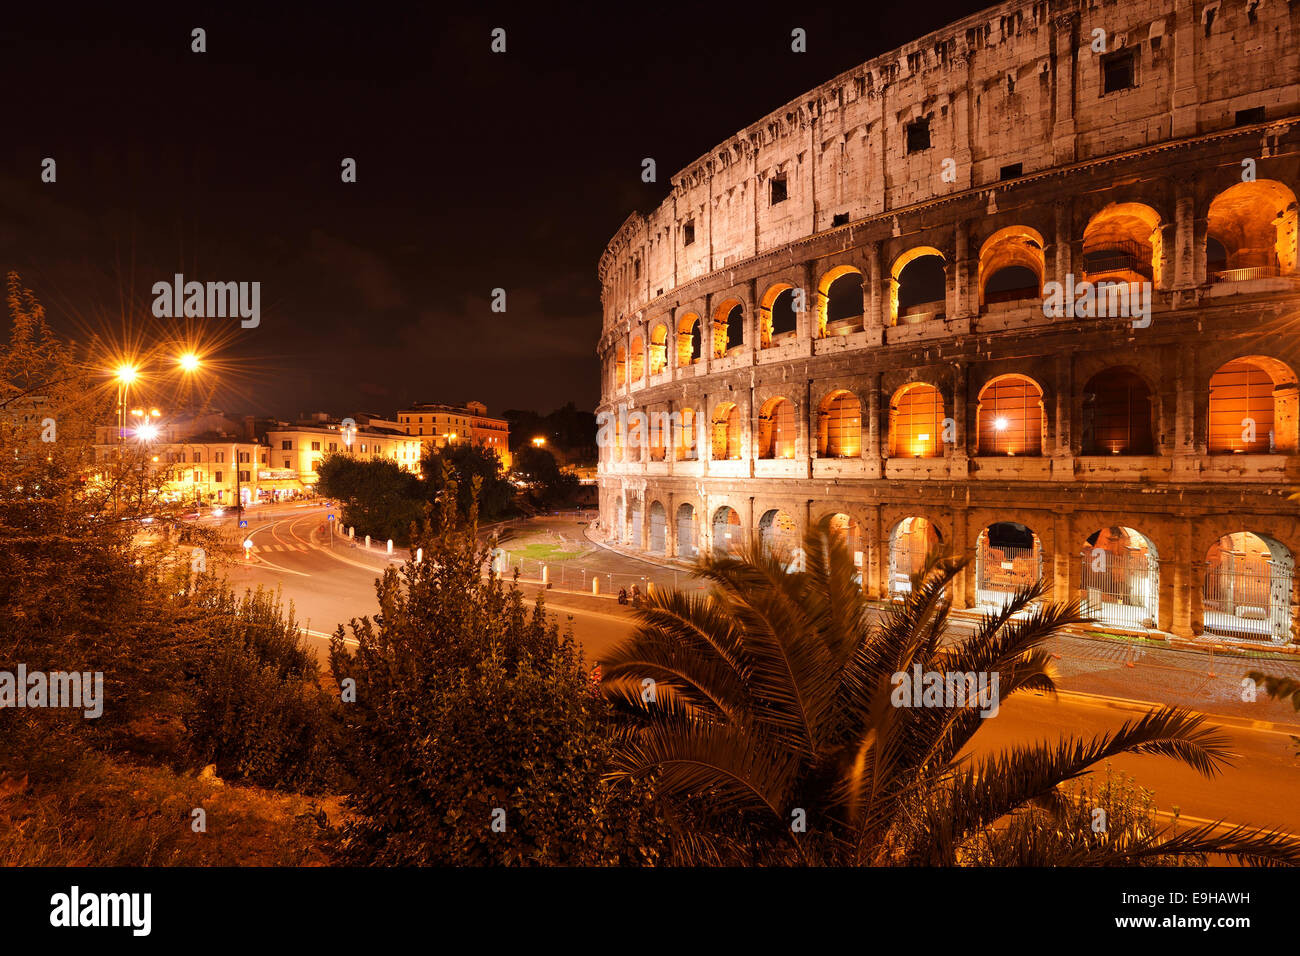 Illuminated Colosseum at night, Rome, Italy Stock Photo